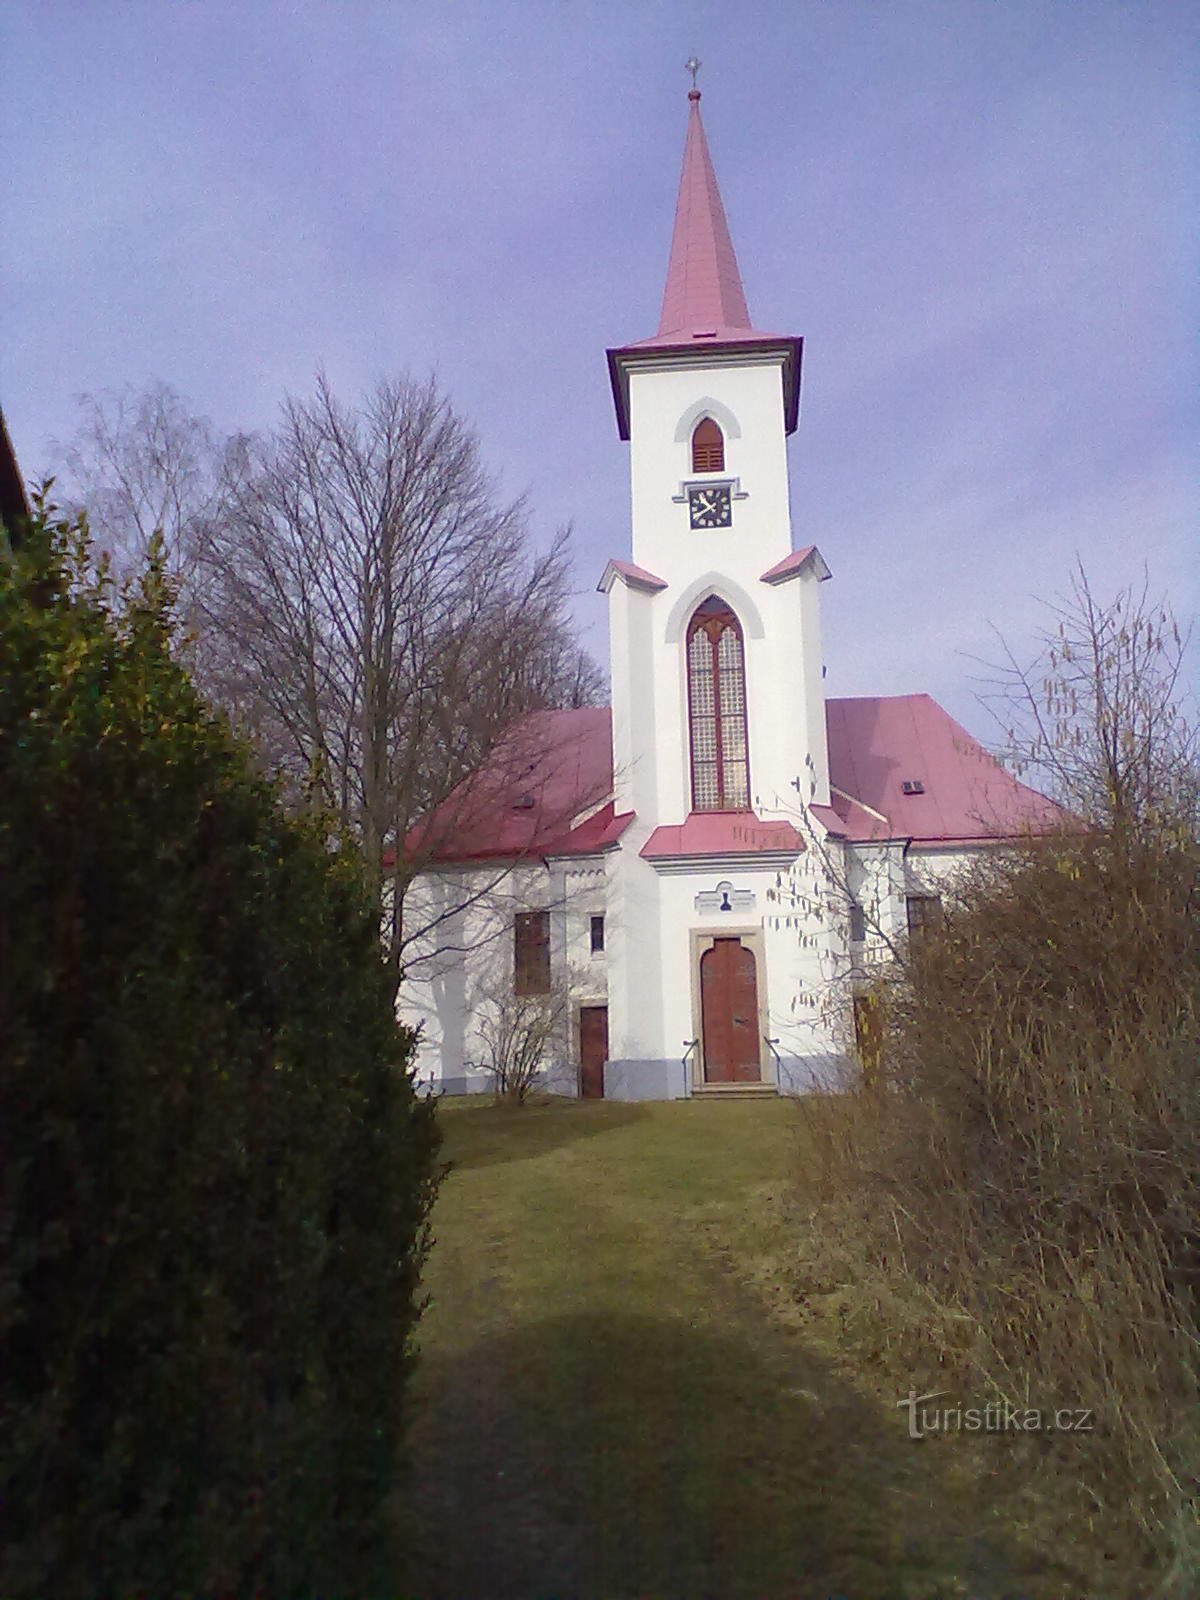 Moraveč - střed našeho putování. Českobratrský evangelický kostel z roku 1785, v